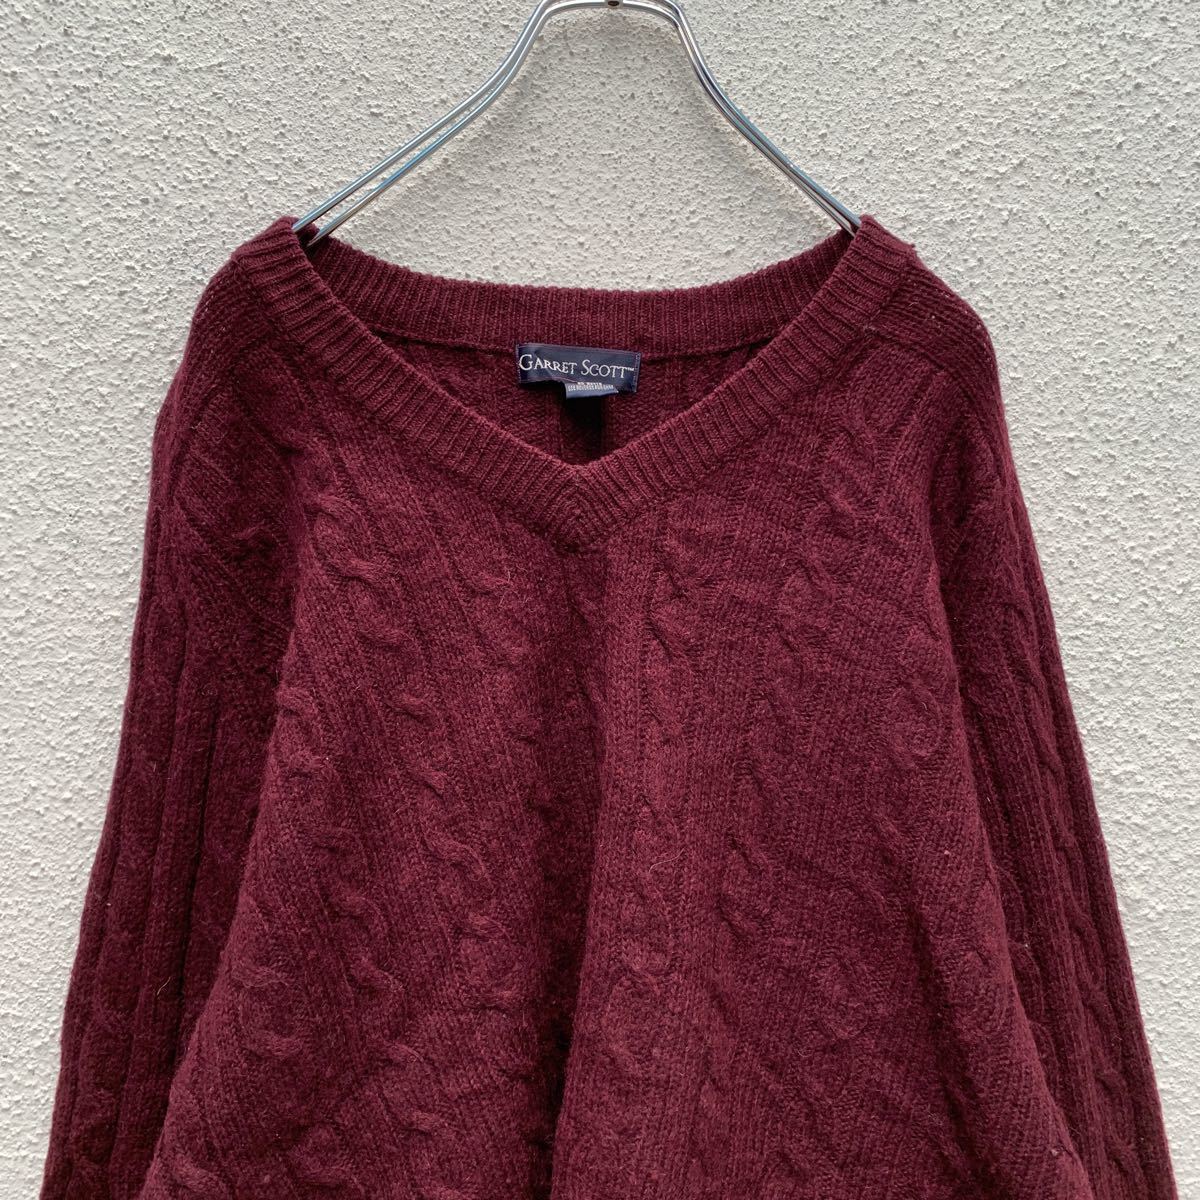 GARRET SCOTT шерсть вязаный свитер XL бордо V шея большой размер кабель плетеный б/у одежда . America запас a501-5309